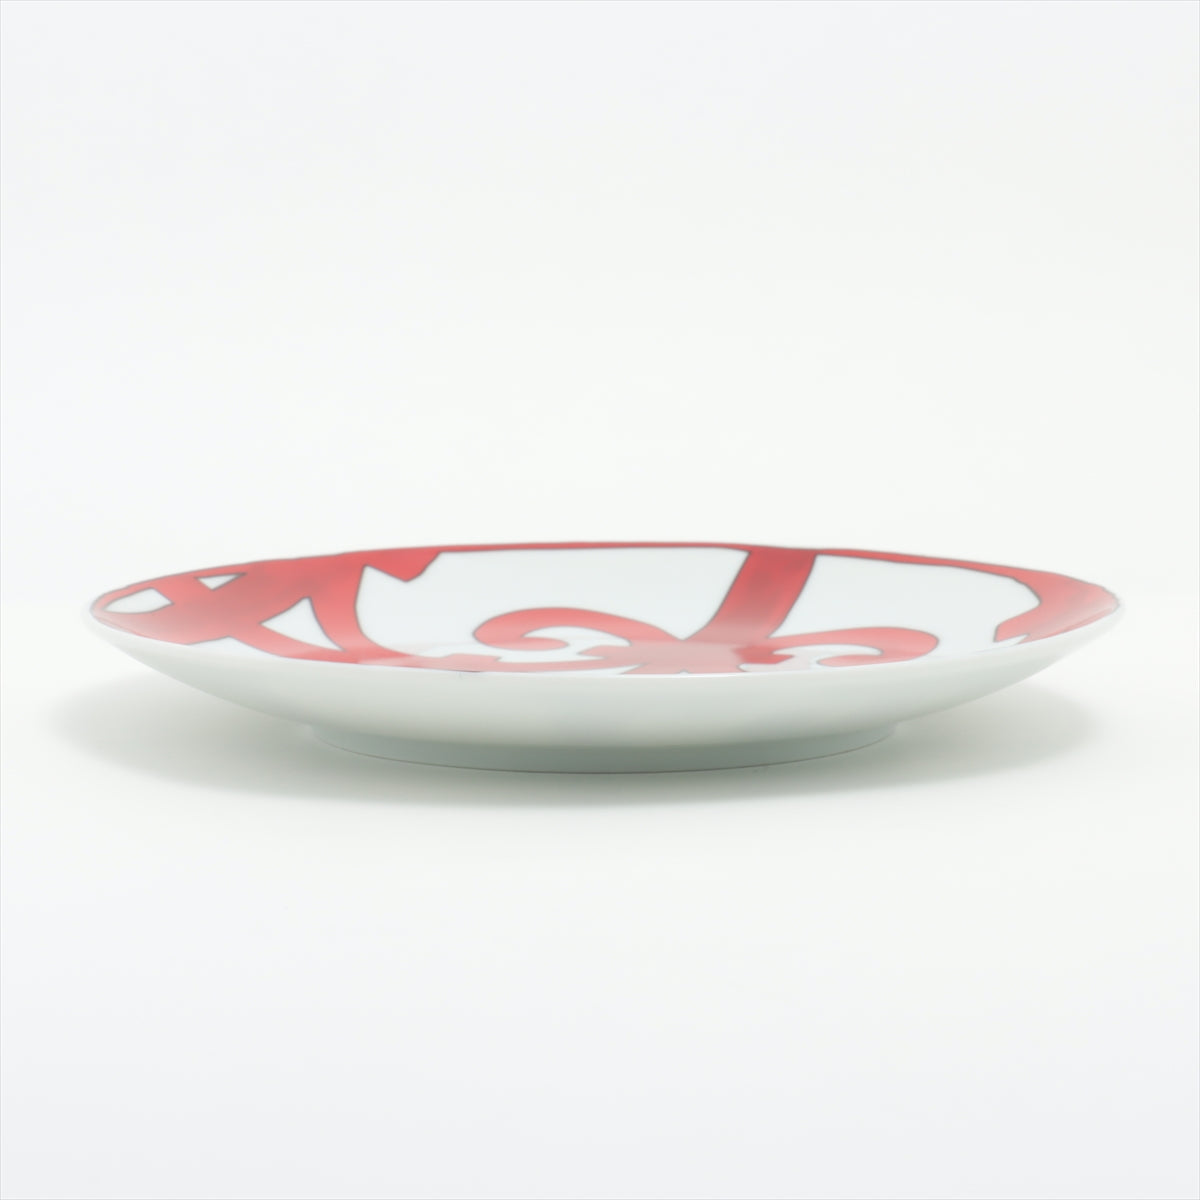 Hermès Guadalquivir Plates 17cm Ceramic Red dessert plate